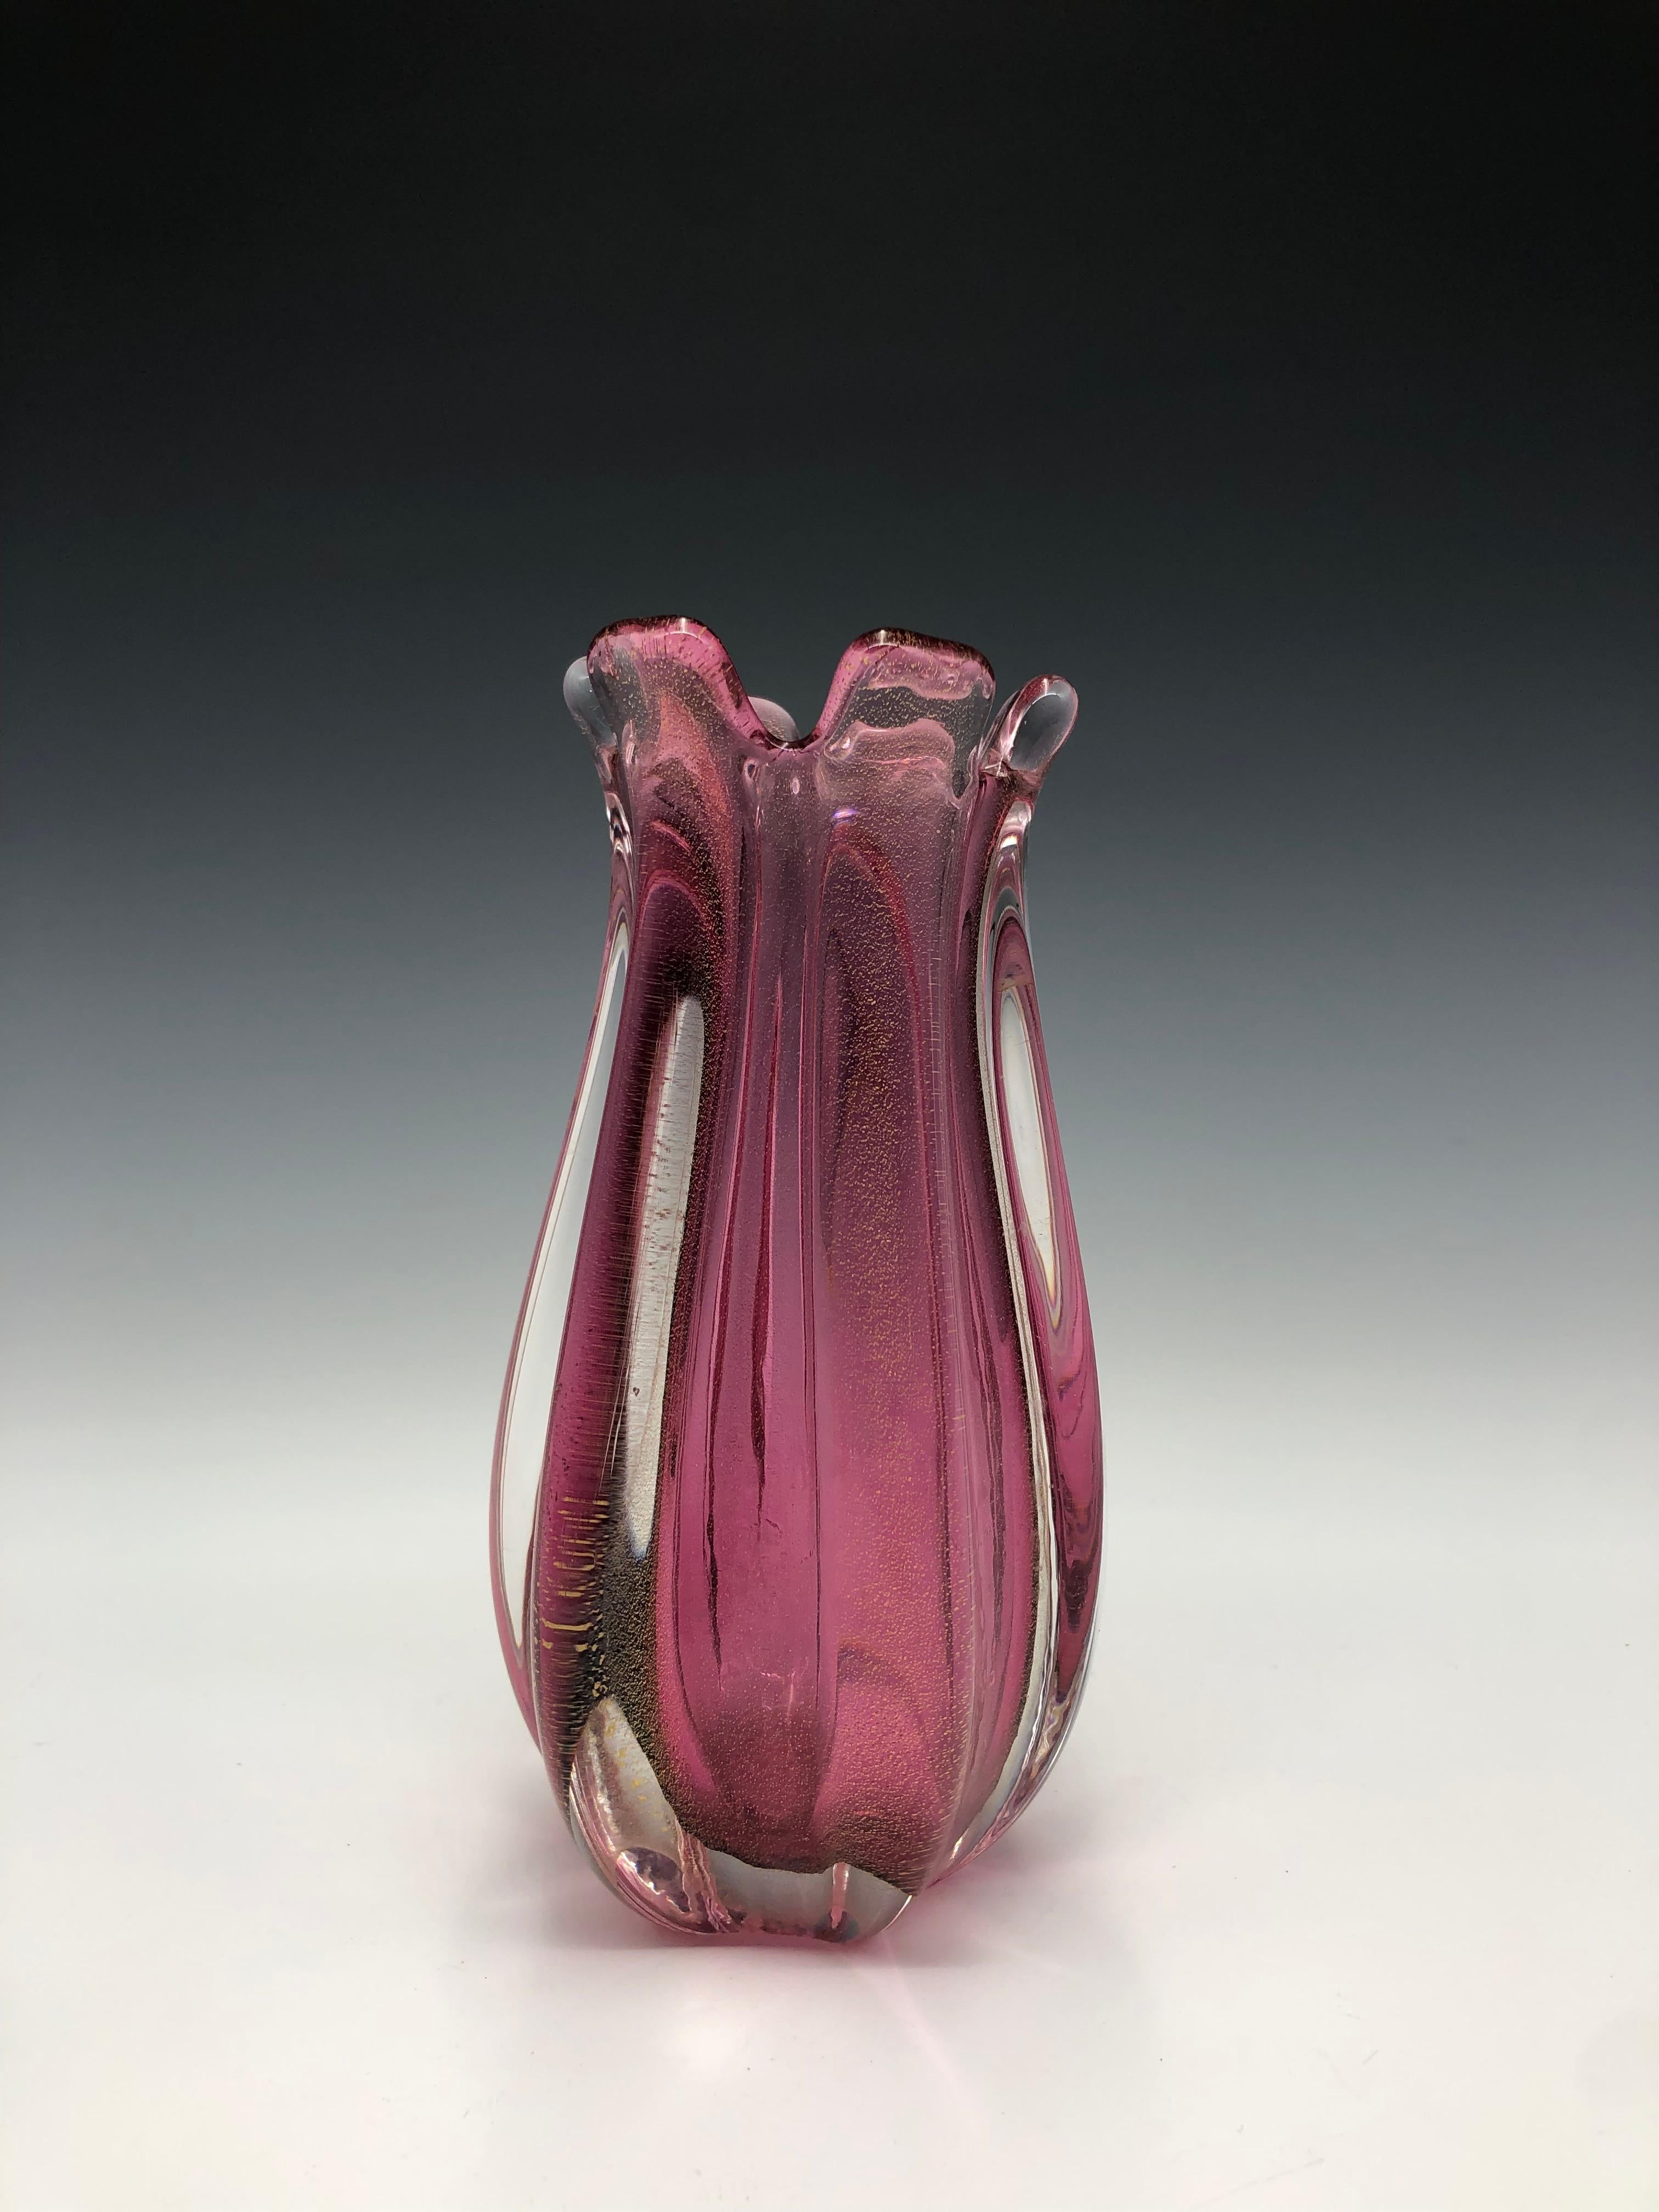 Vase Sommerso en verre de Murano infusé d'or rose côtelé - Moderne Sculpture par Murano Glass